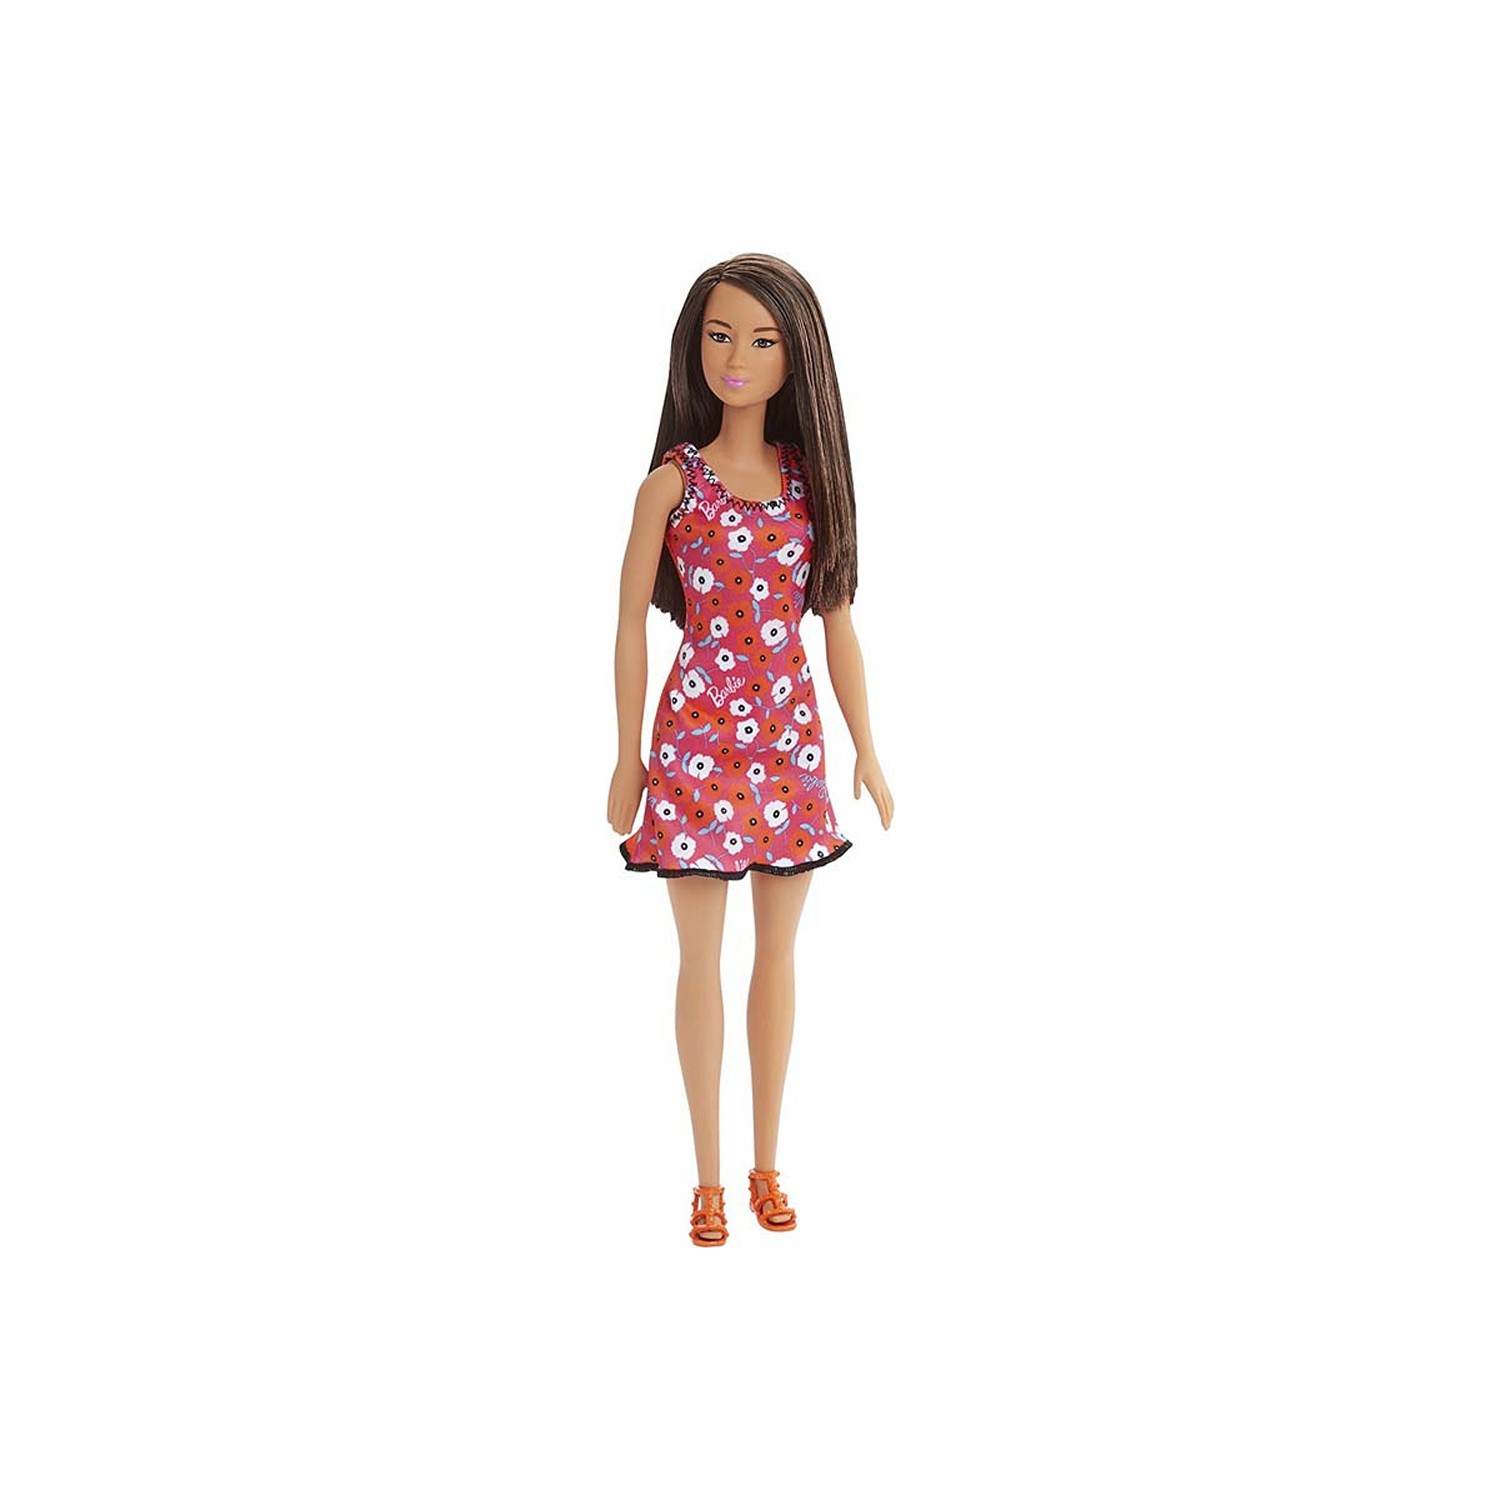 Кукла Barbie Sik DVX90 barbie backpack cyo